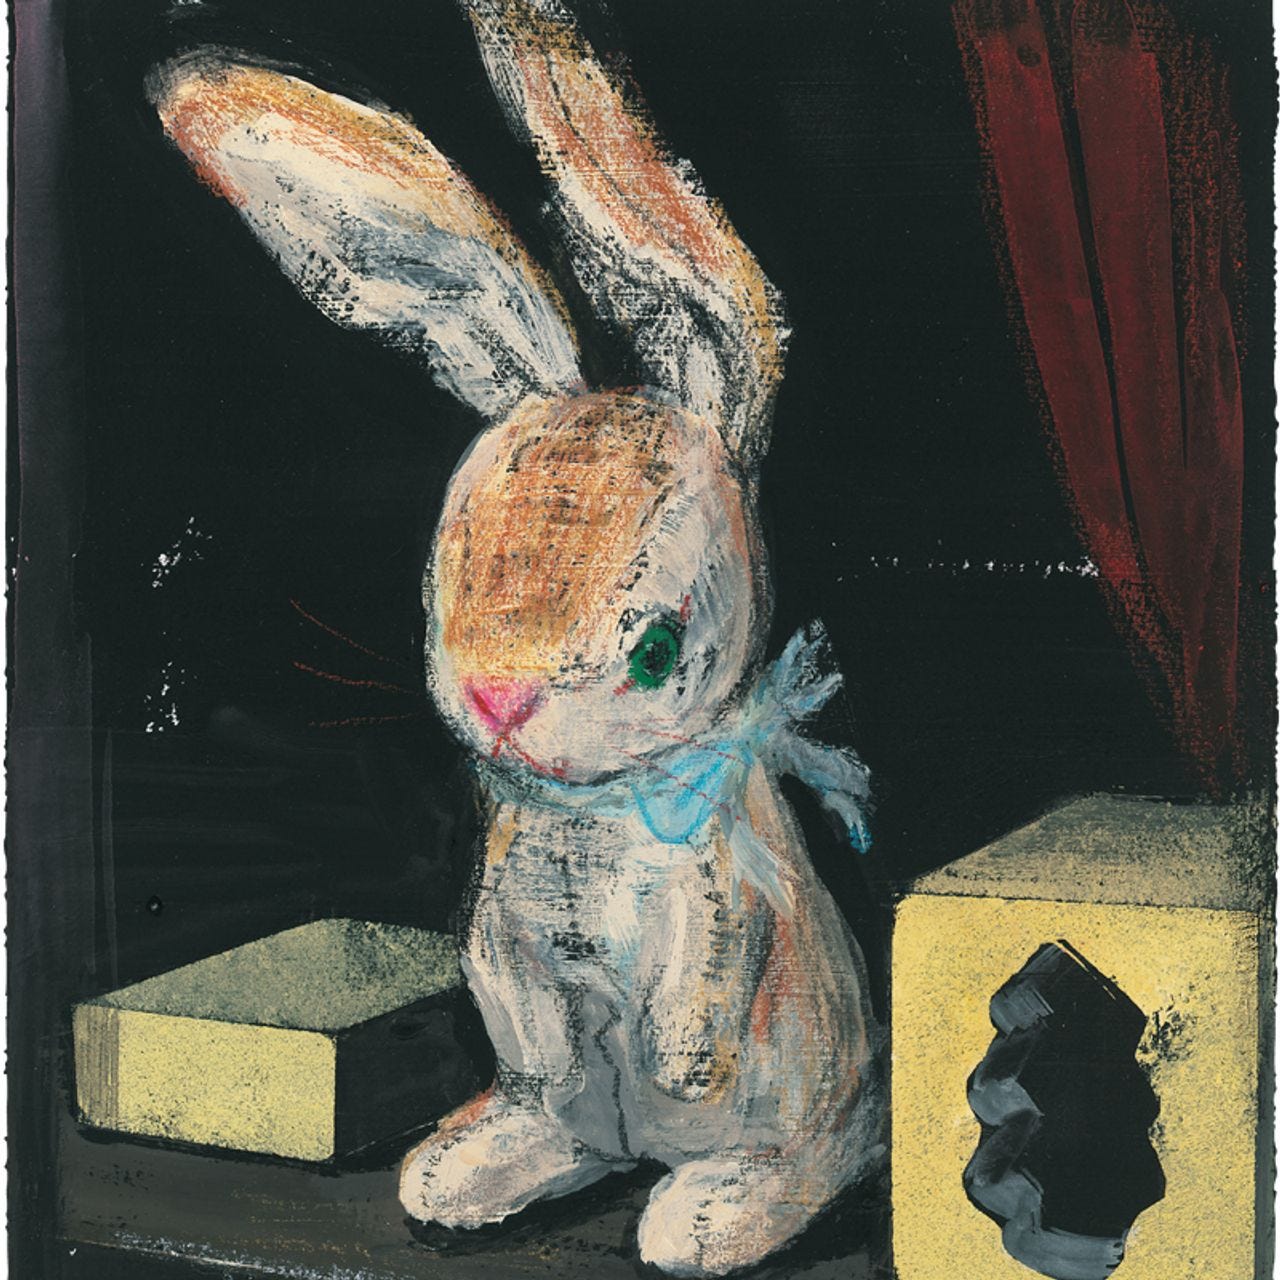 Children's Books: Margery Williams's 'The Velveteen Rabbit' Turns 100 - WSJ